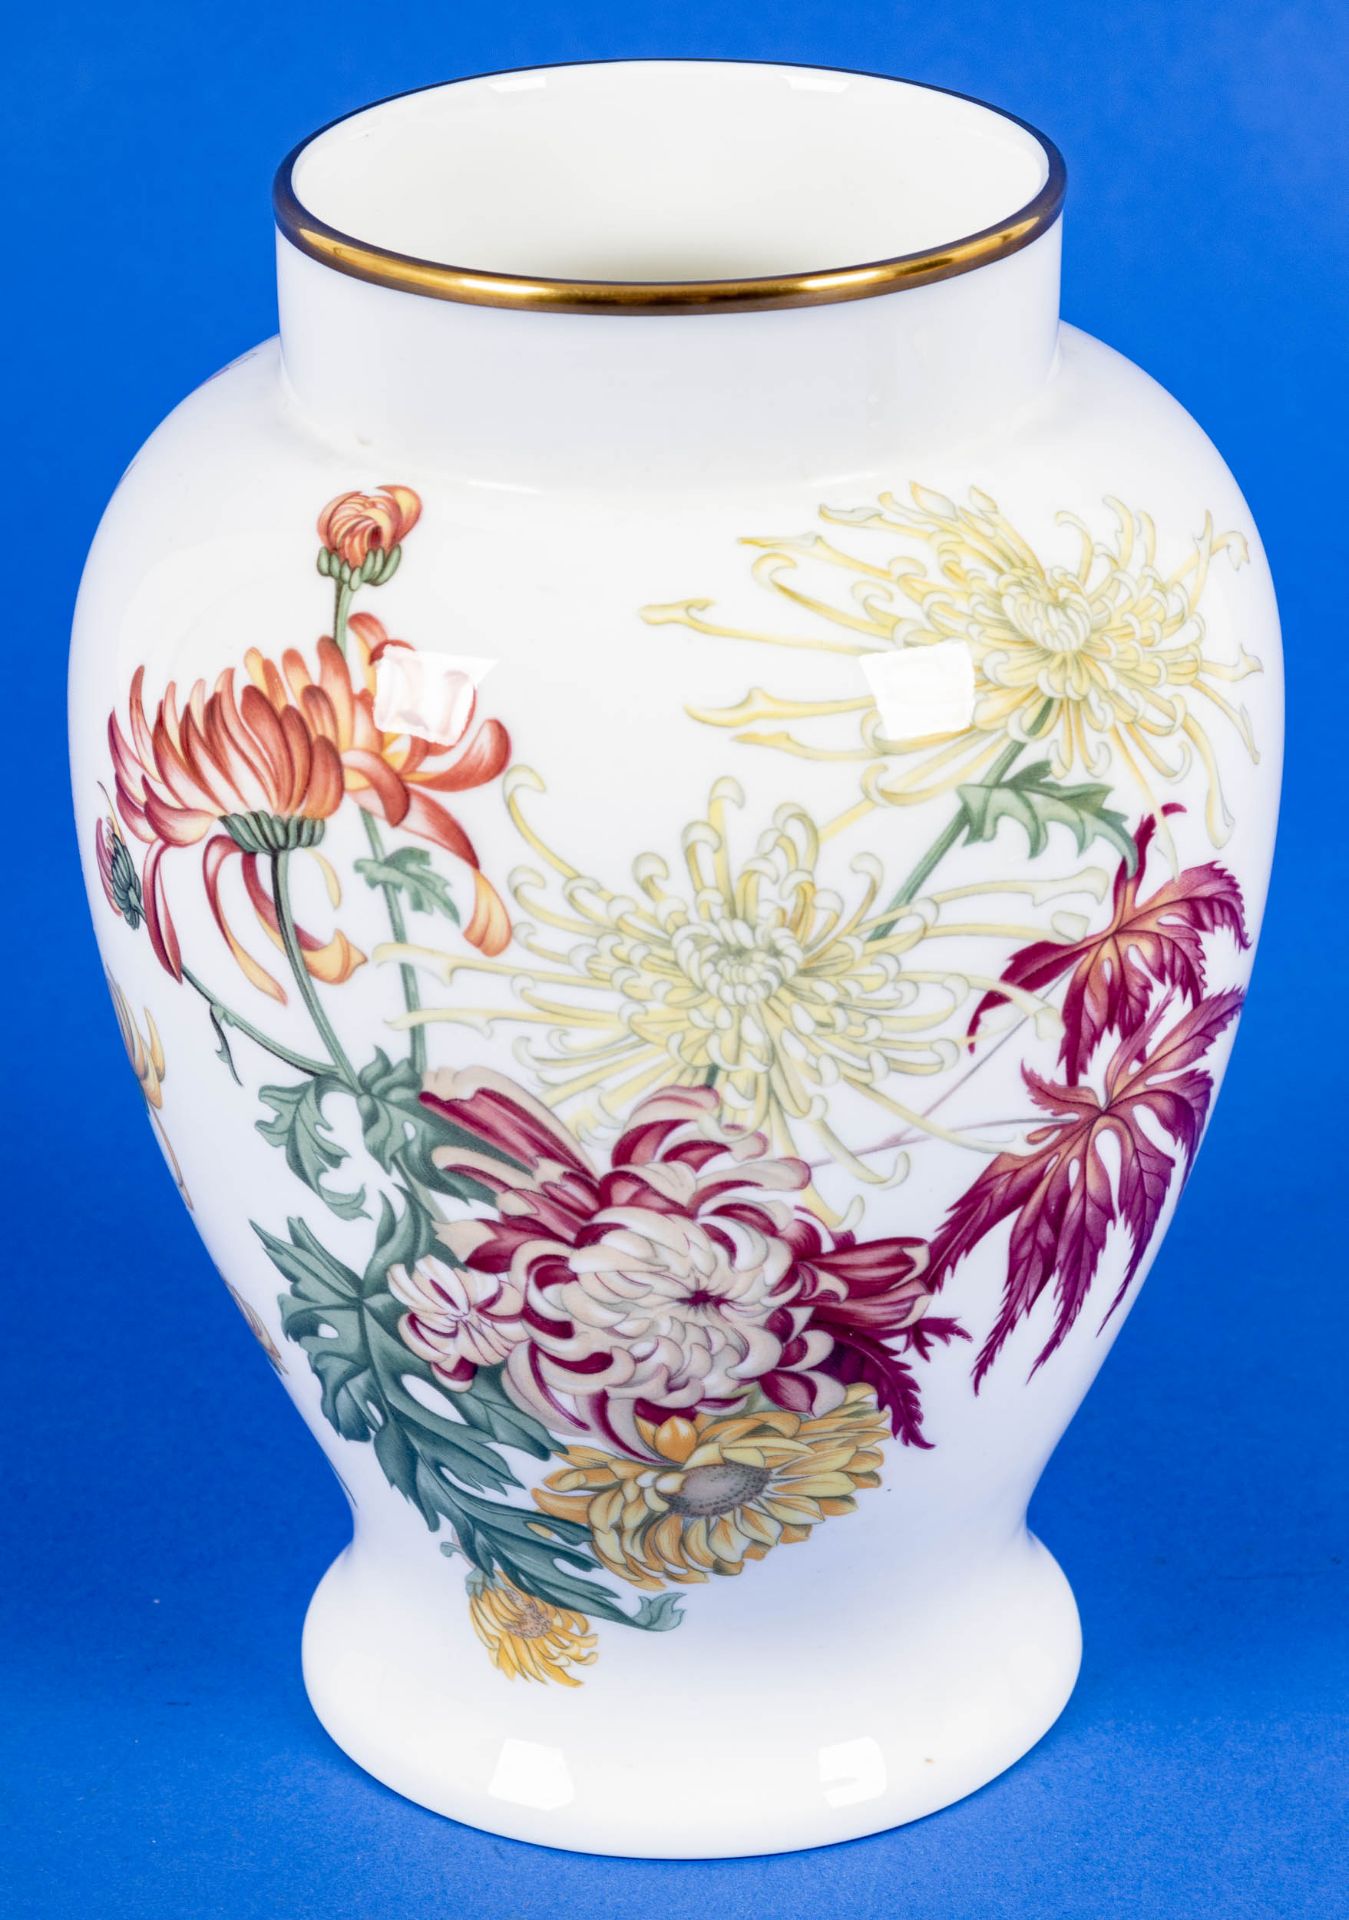 Gebauchte Blumenvase, Wedgewood, Bone-China, Höhe ca. 21 cm, polychrom lithografierte Floraldekore,